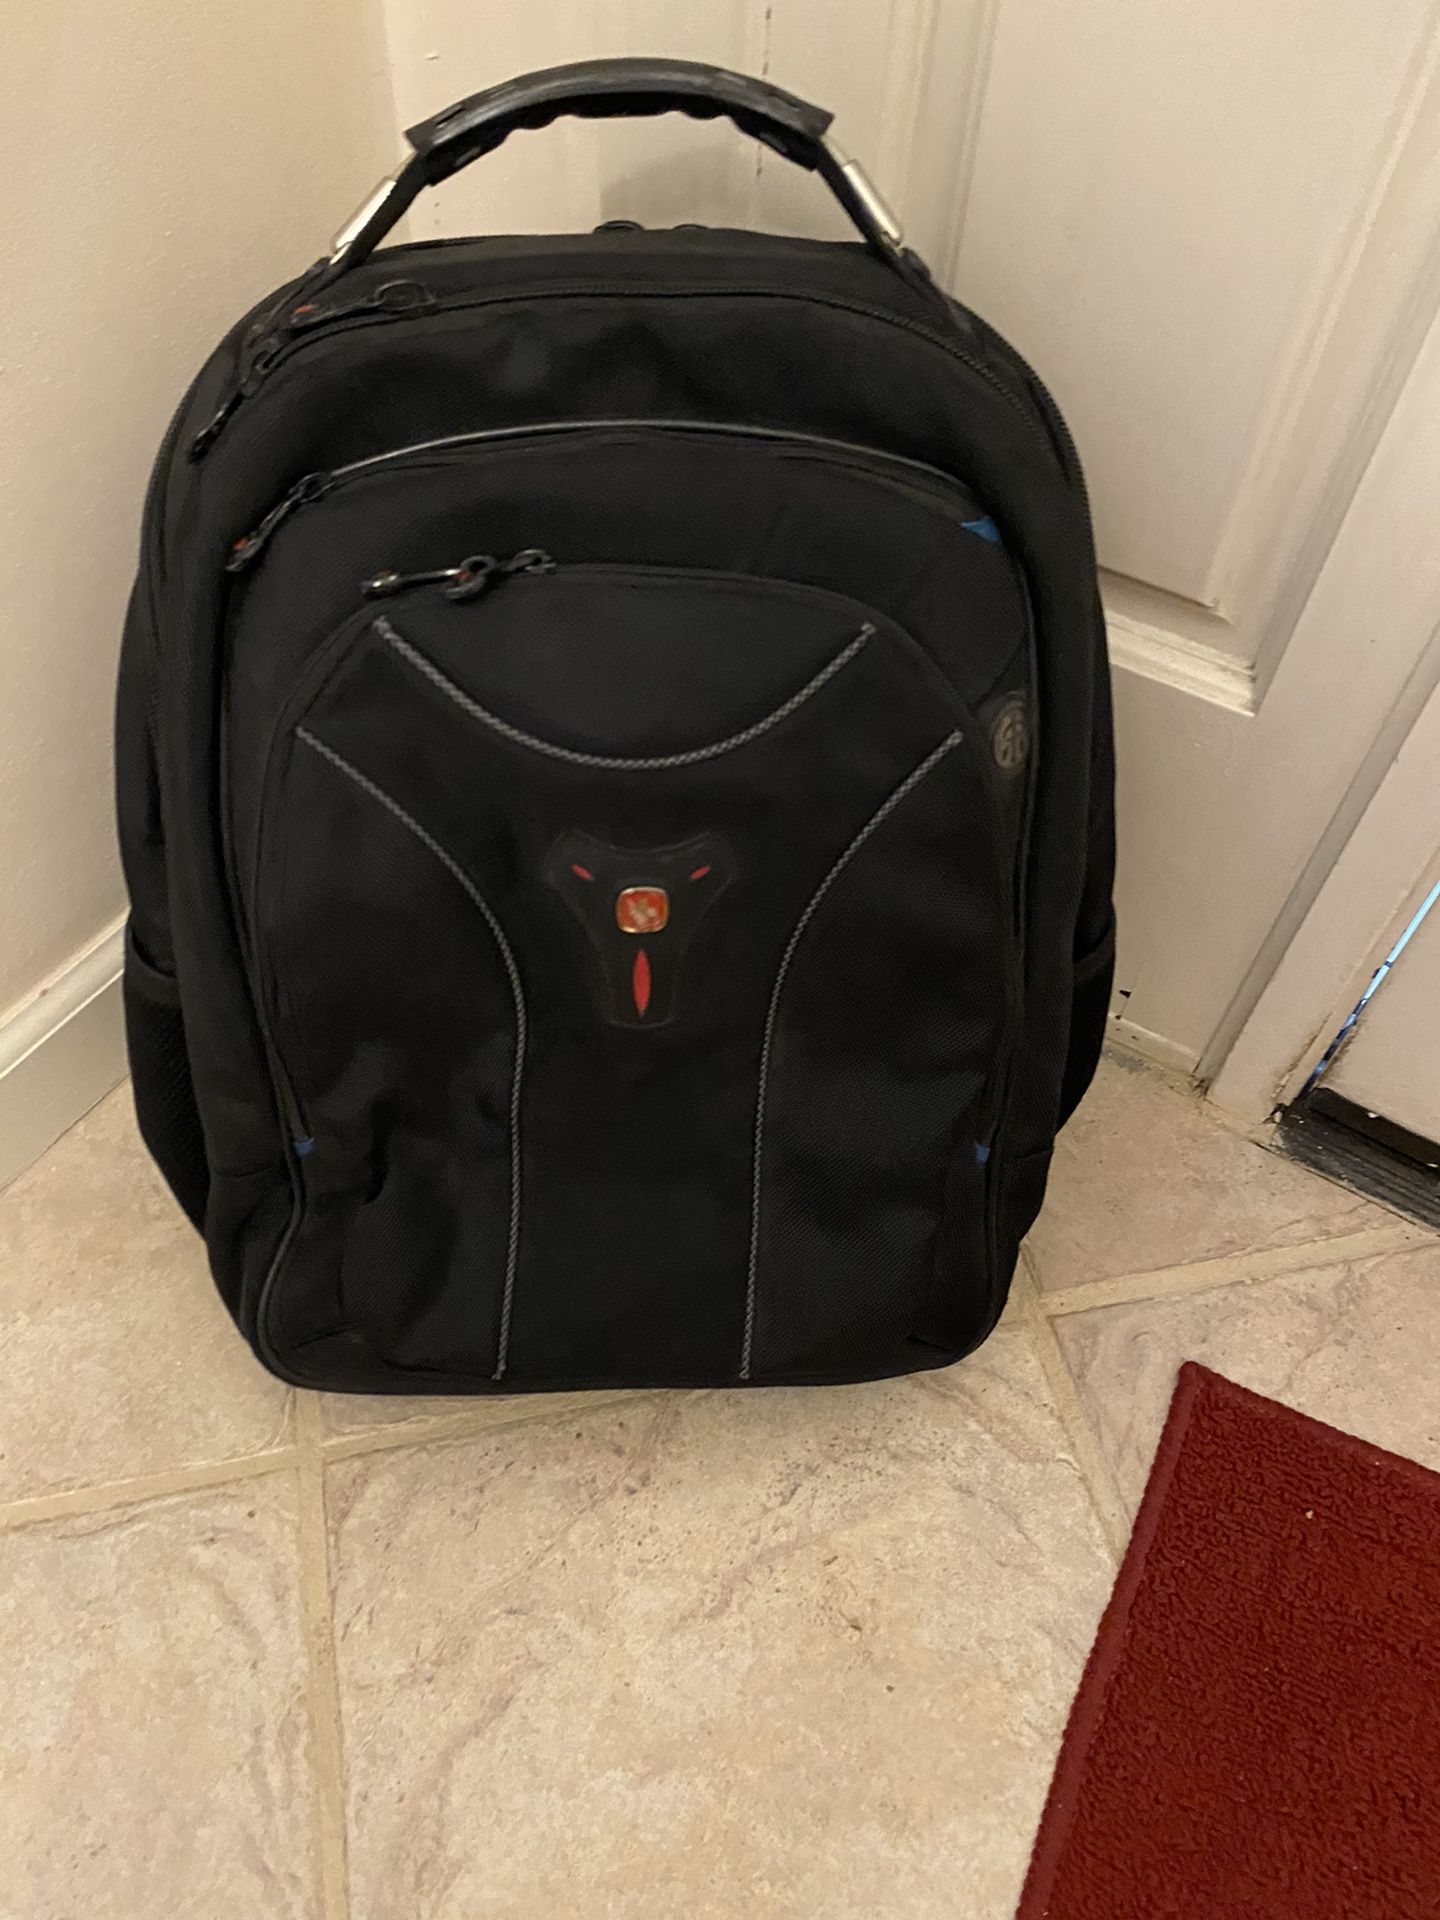 FREE - Swiss gear tech backpack